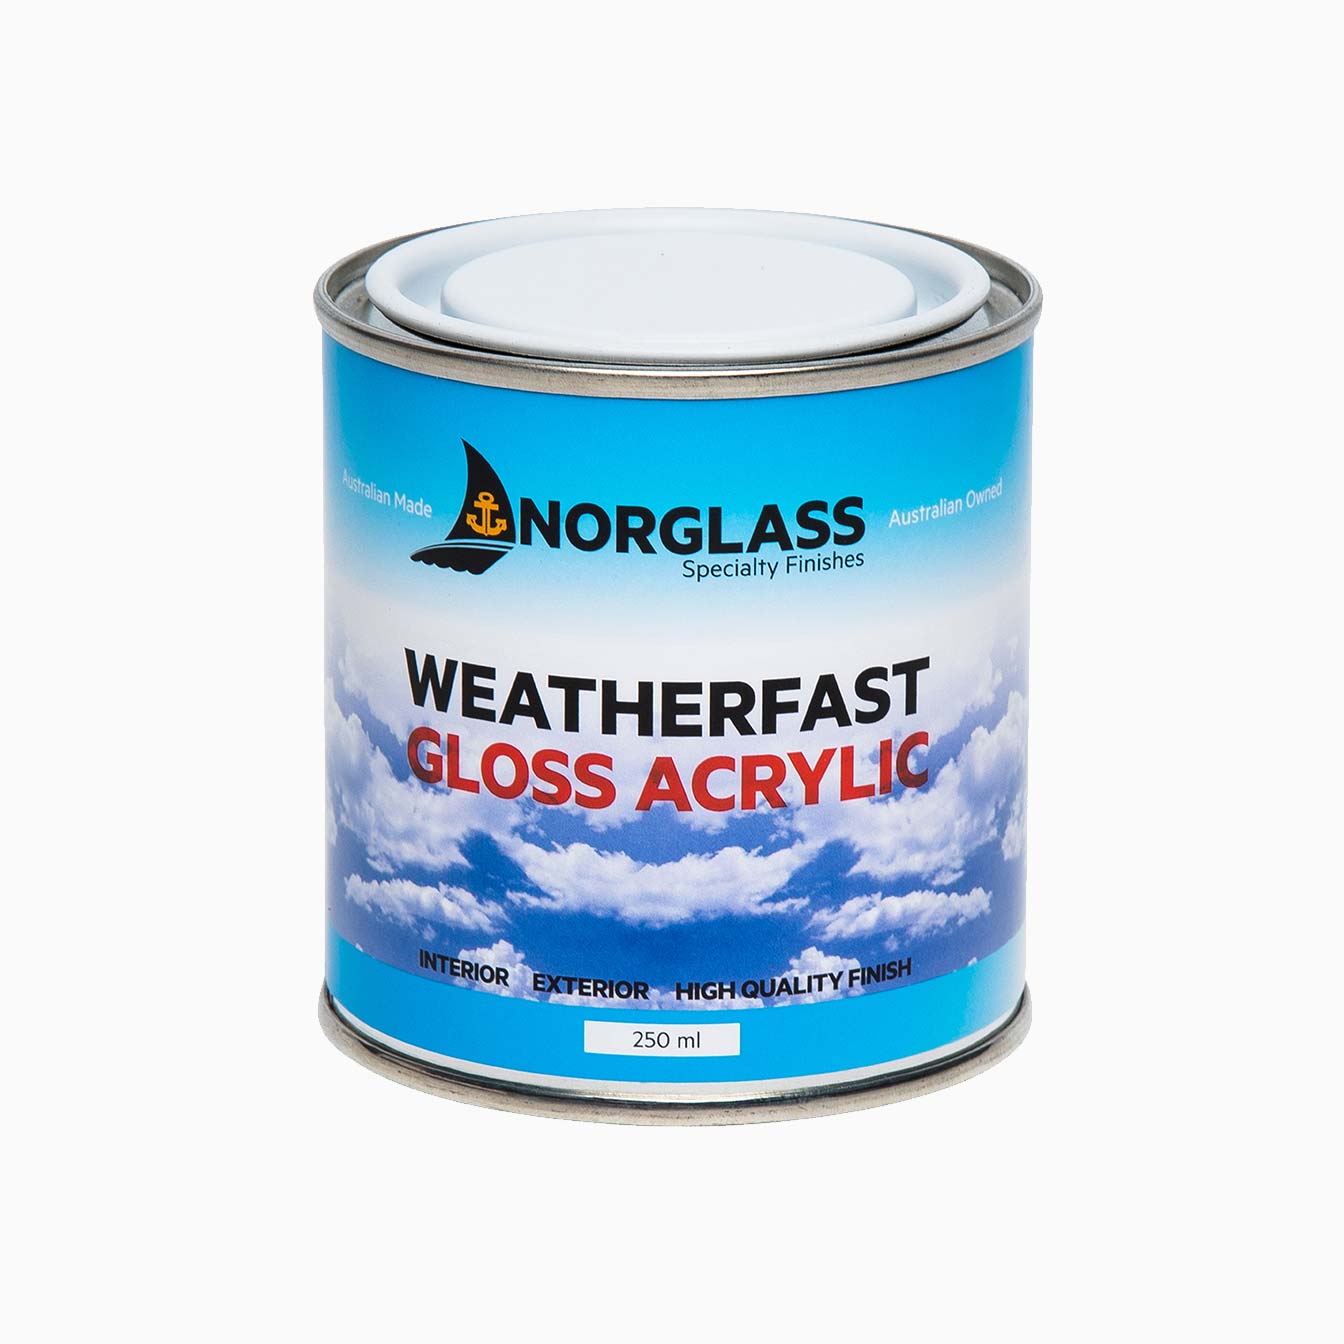 Weatherfast Gloss Acrylic